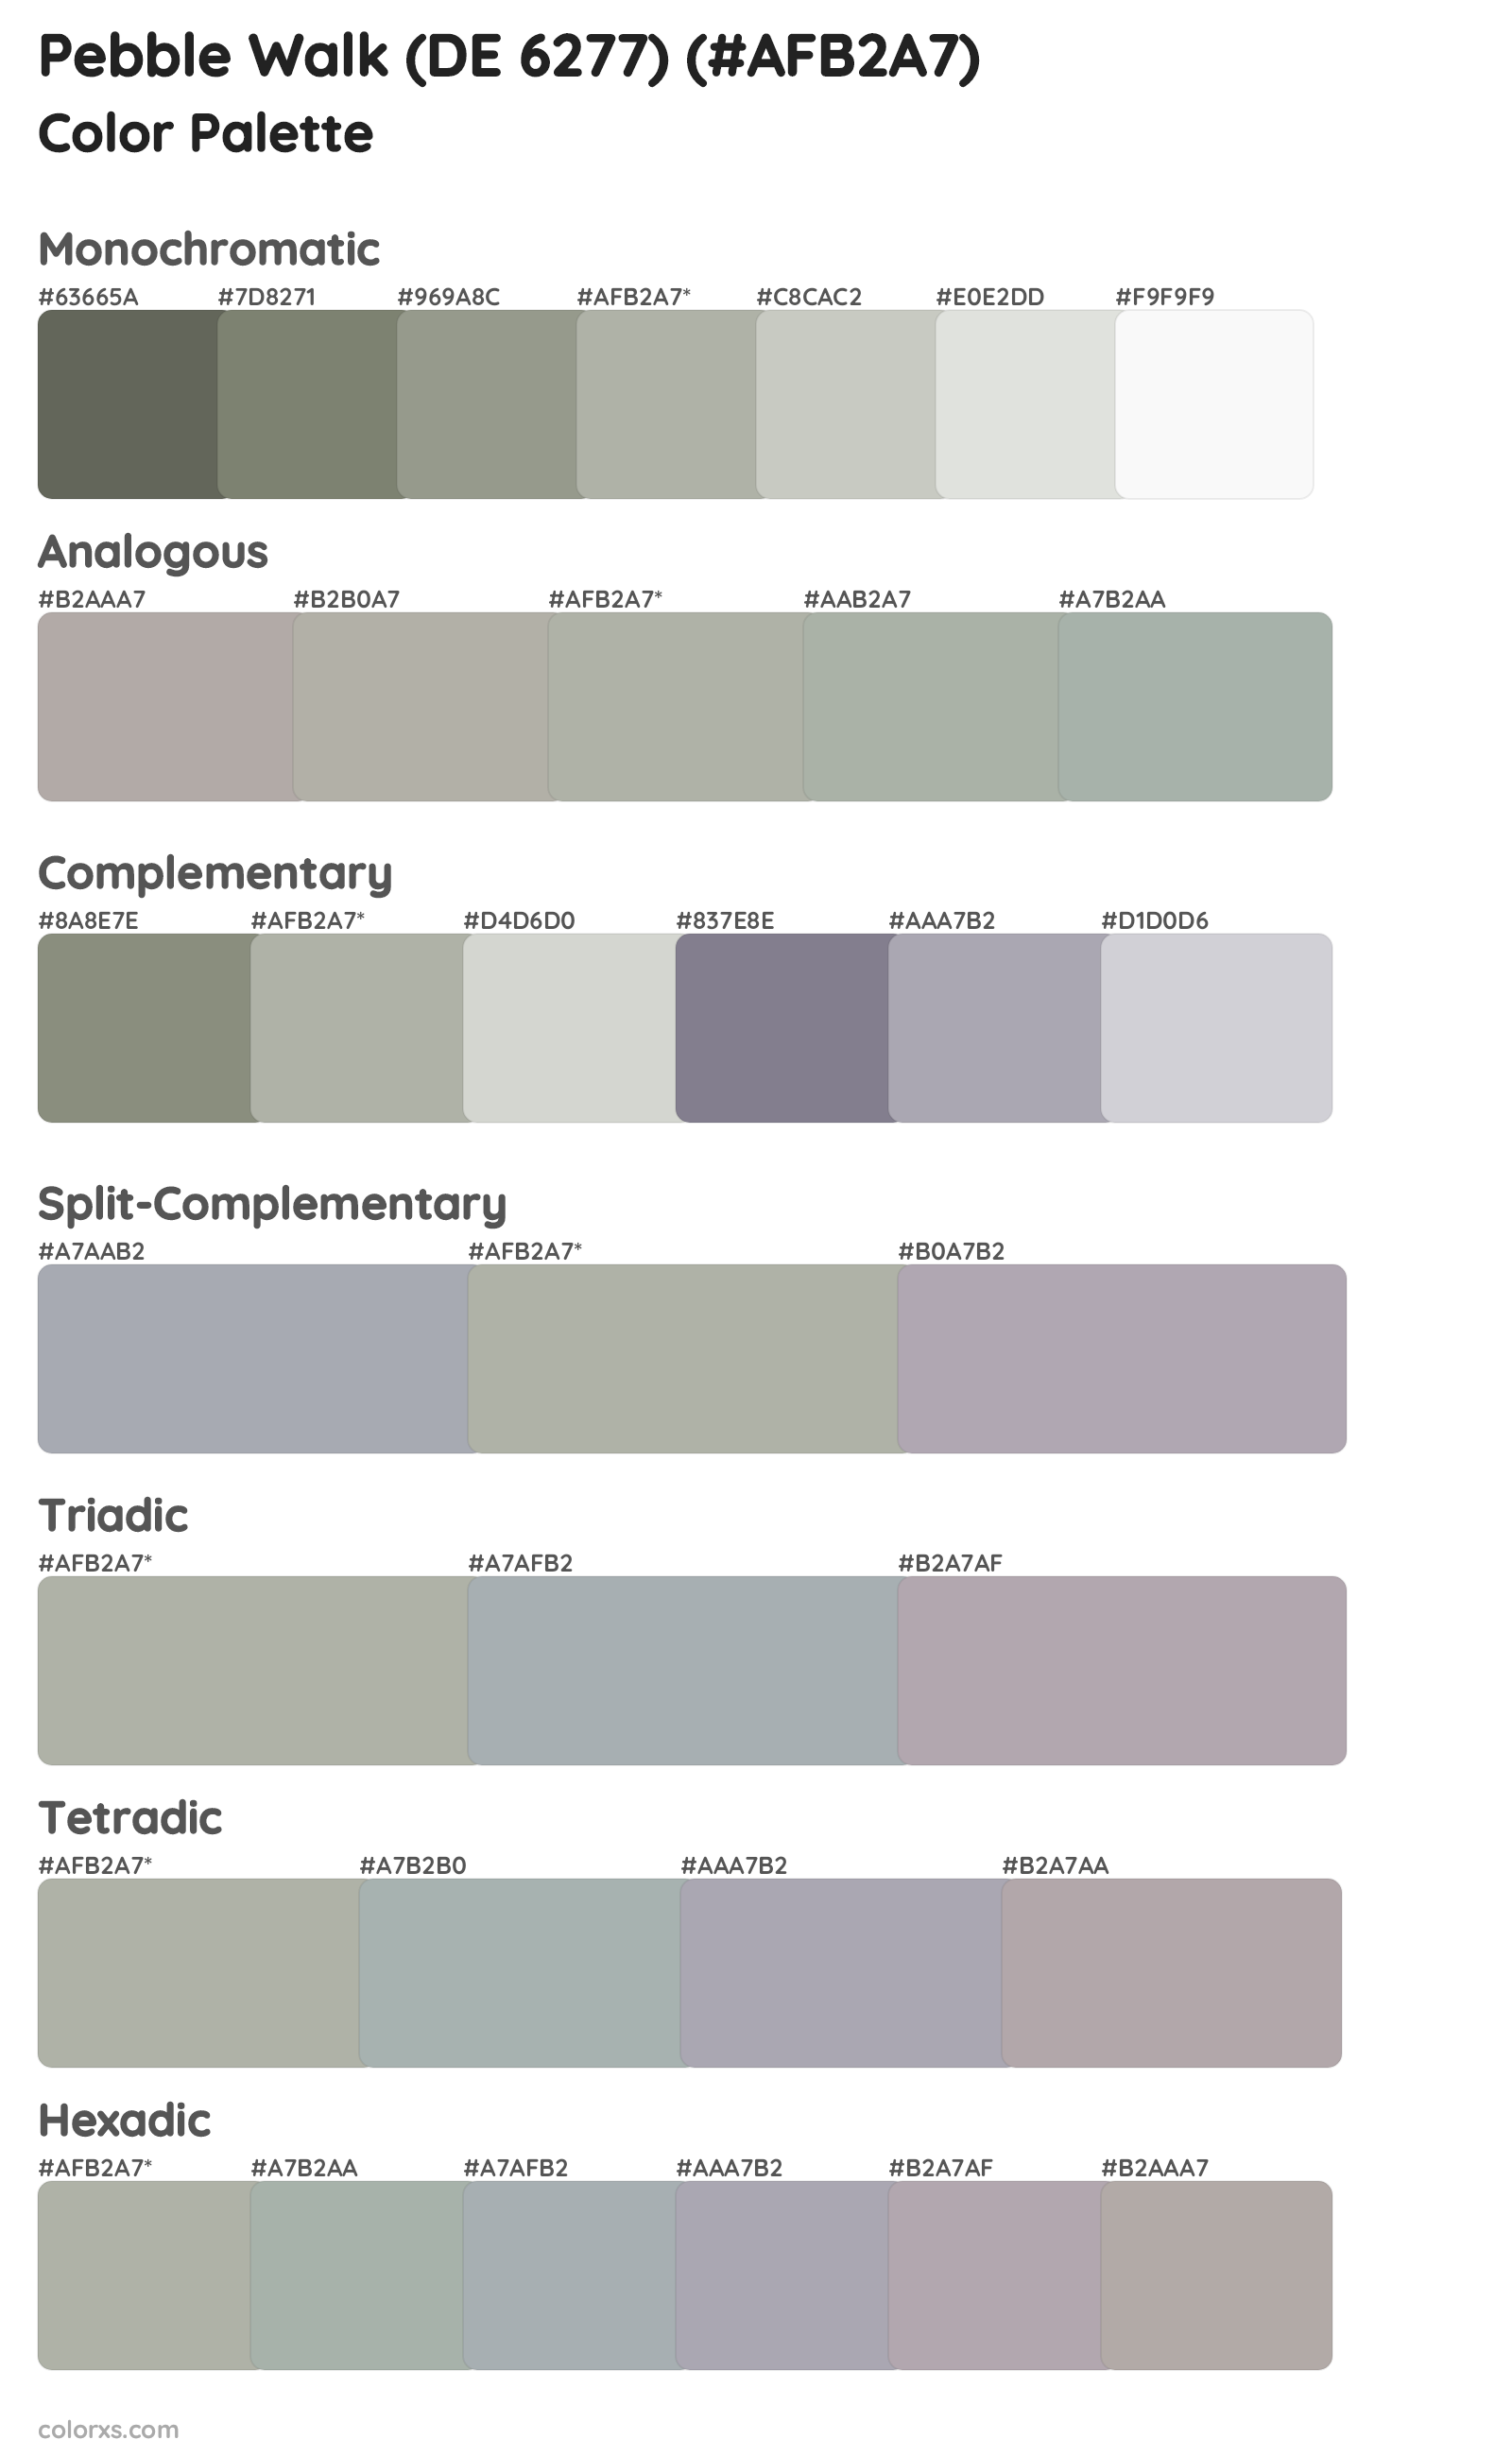 Pebble Walk (DE 6277) Color Scheme Palettes